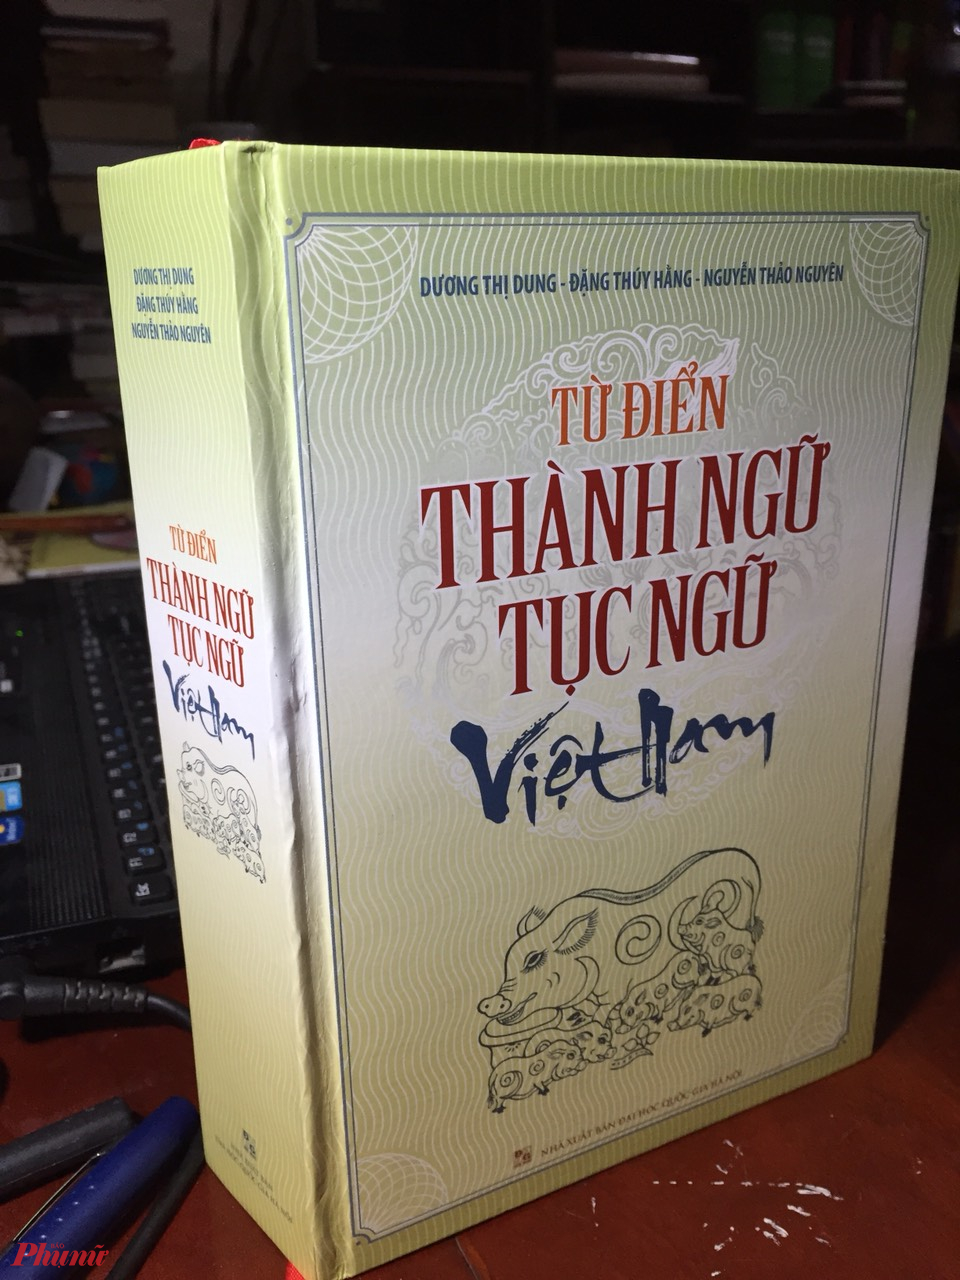 Bìa cuốn “Từ điển thành ngữ tục ngữ Việt Nam” - Ảnh: HTC